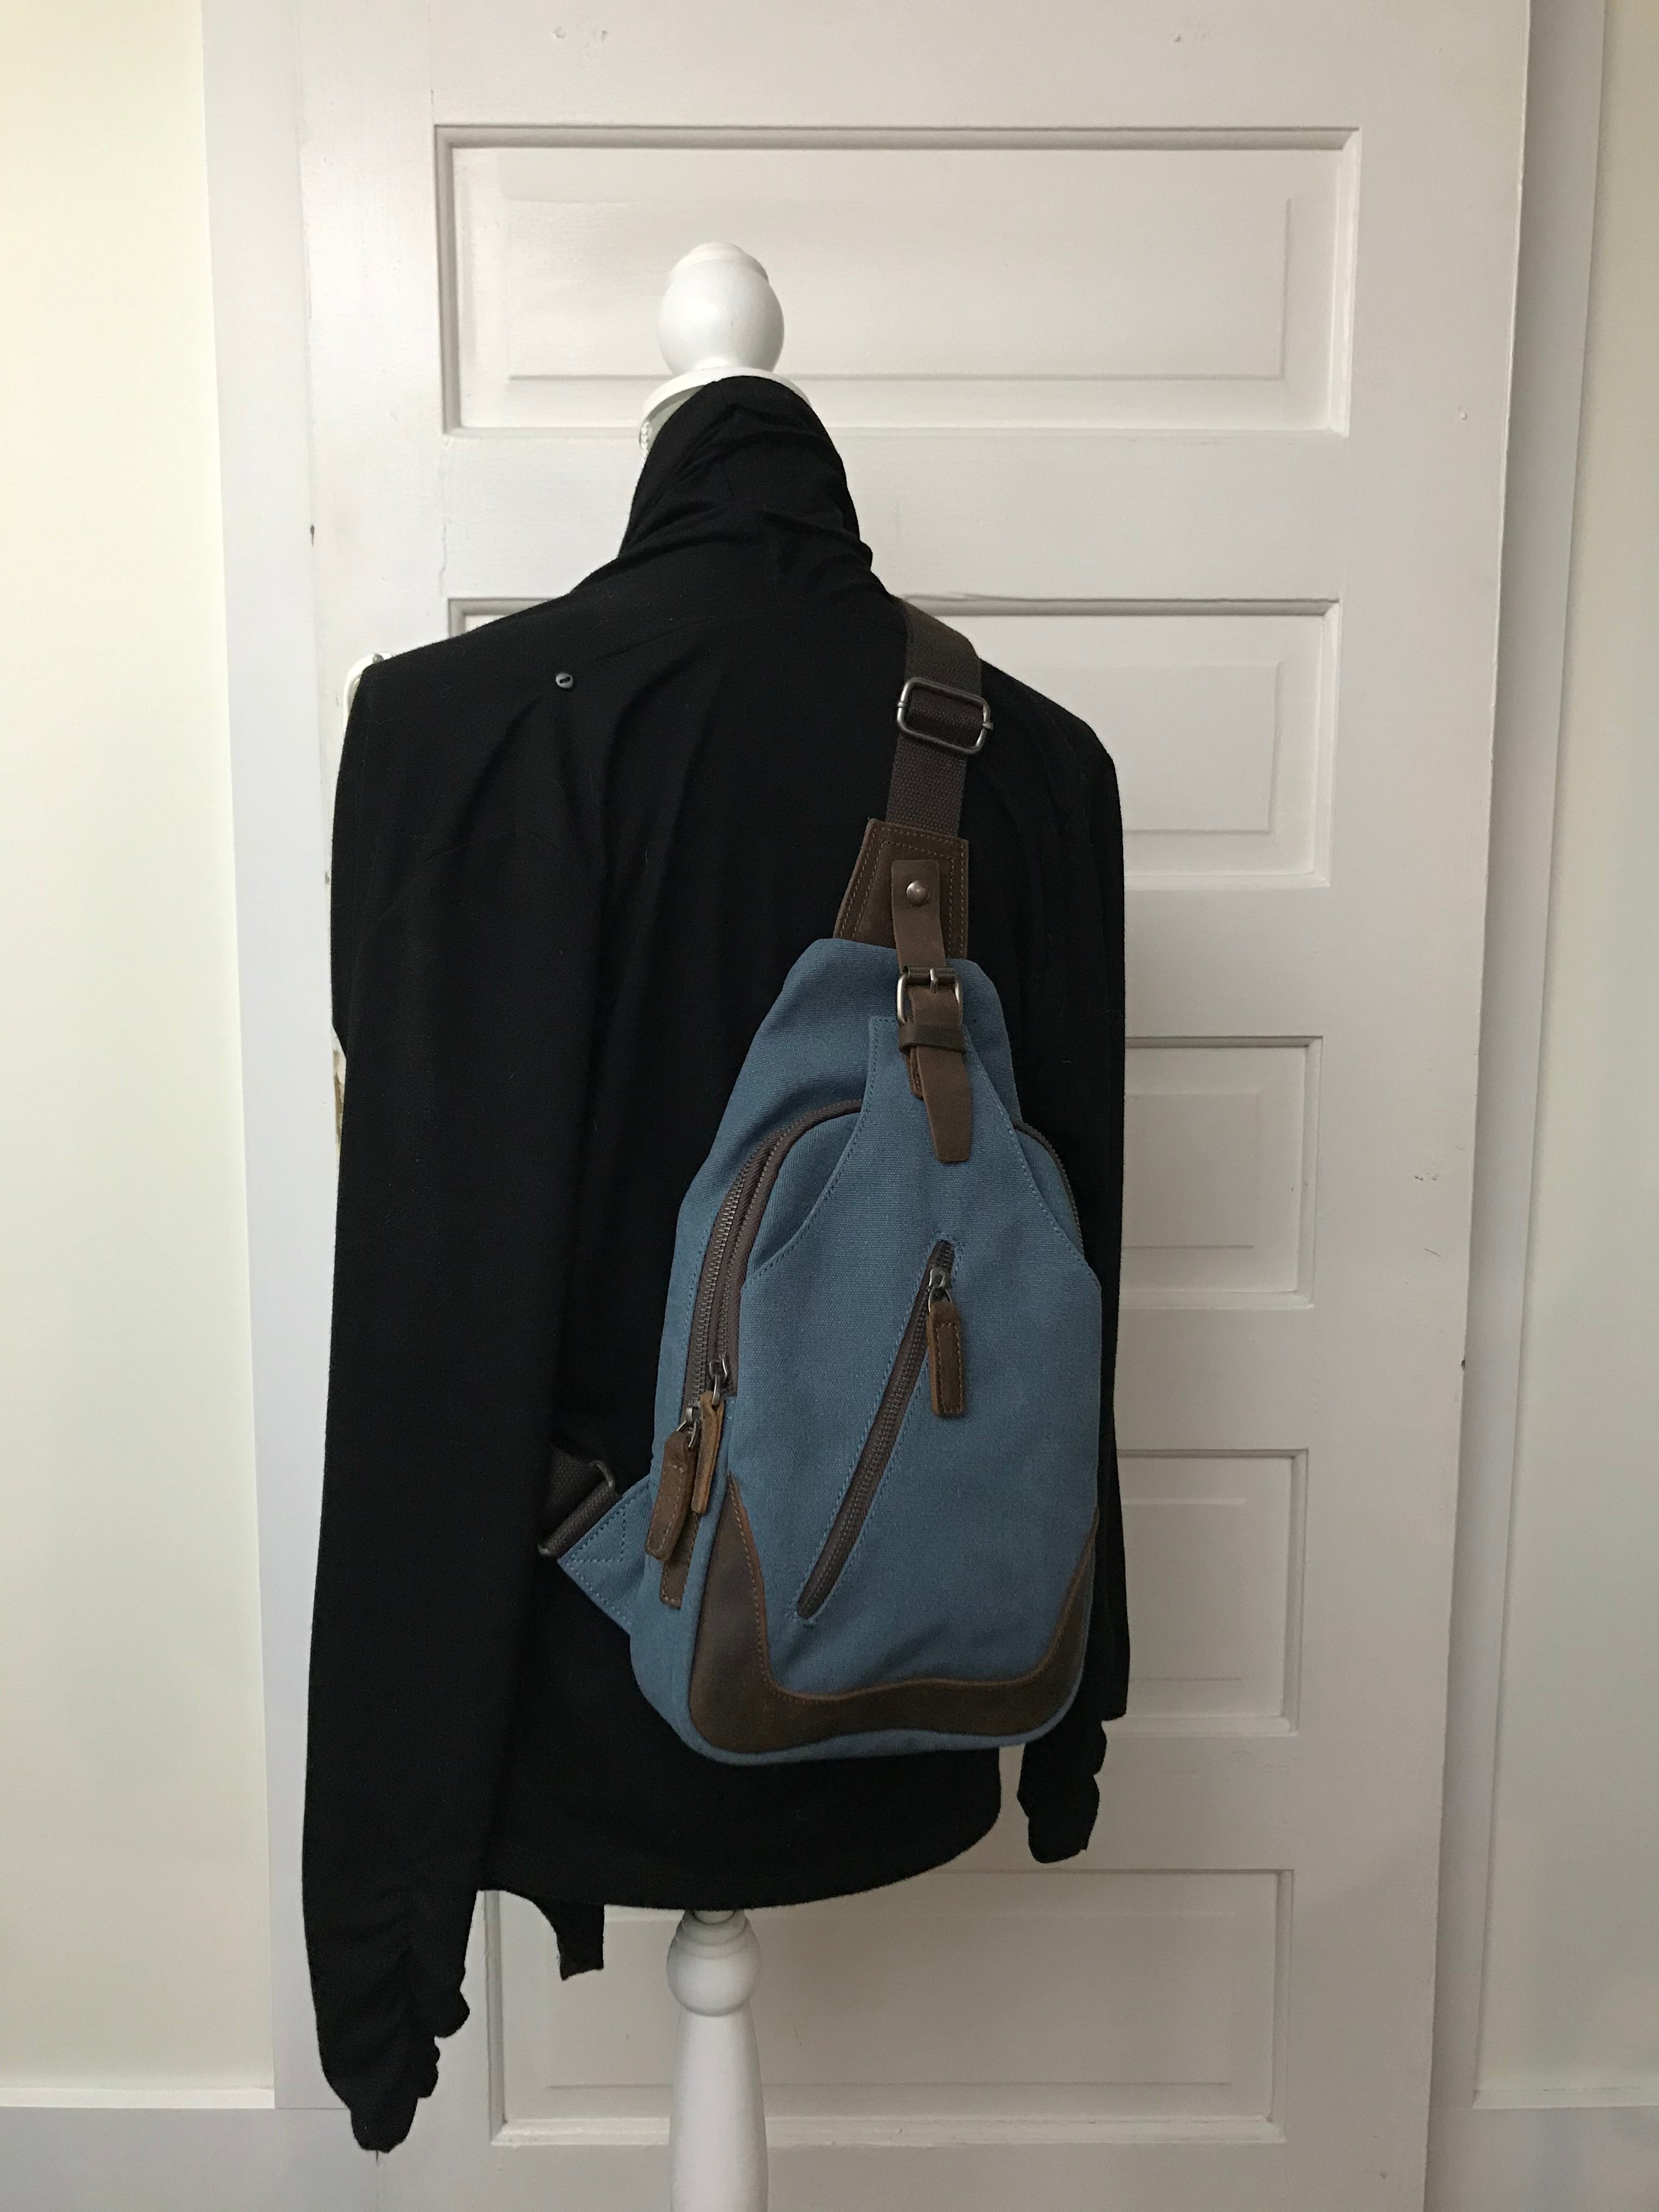 daVan sling backpack